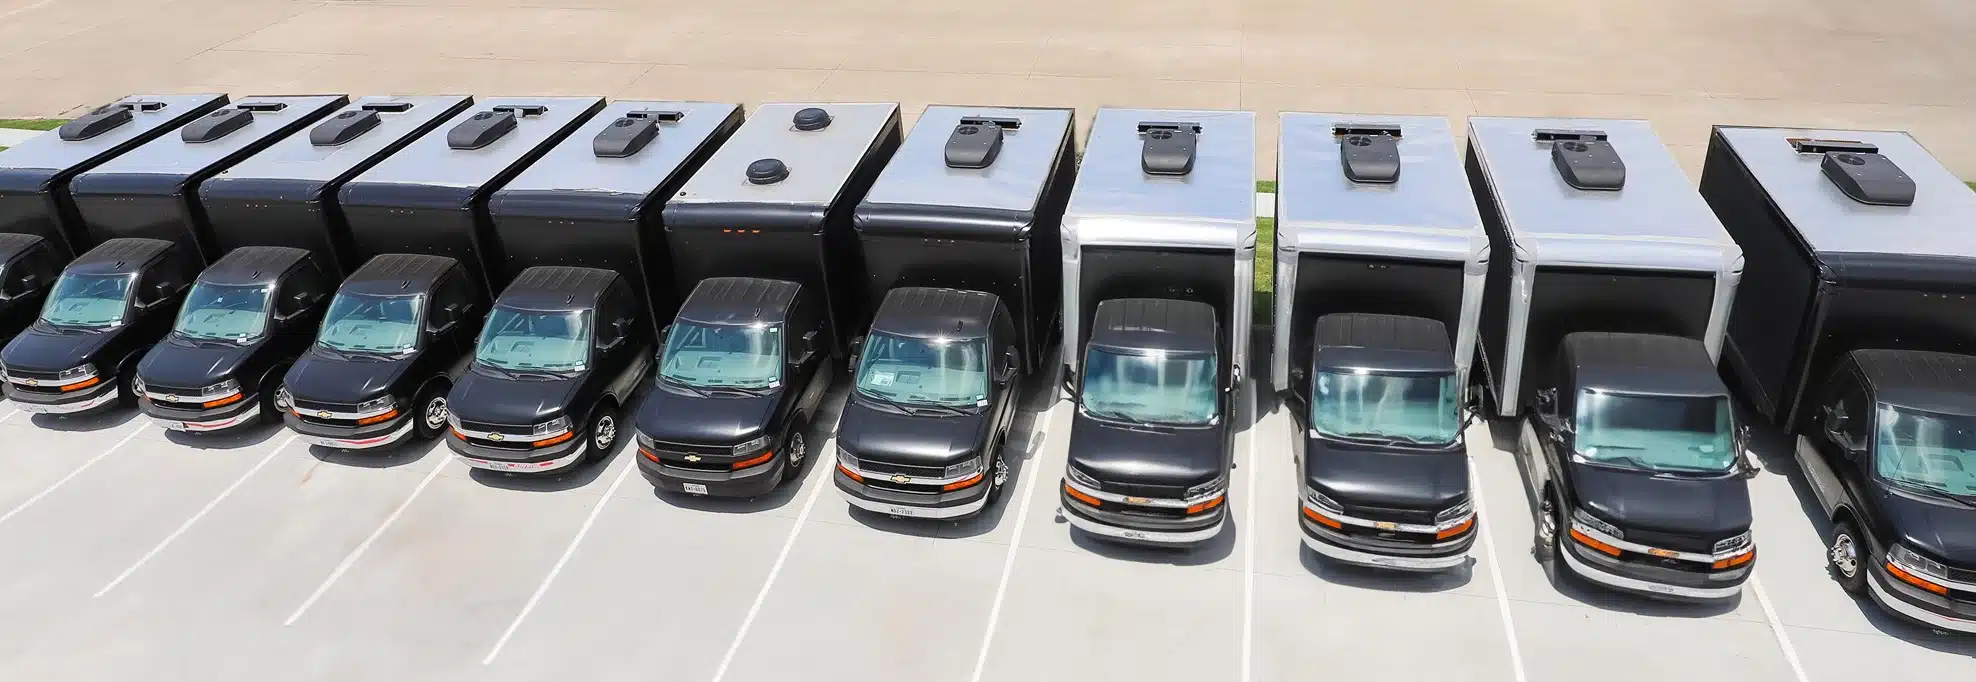 denver-digital-mobile-led-billboard-trucks